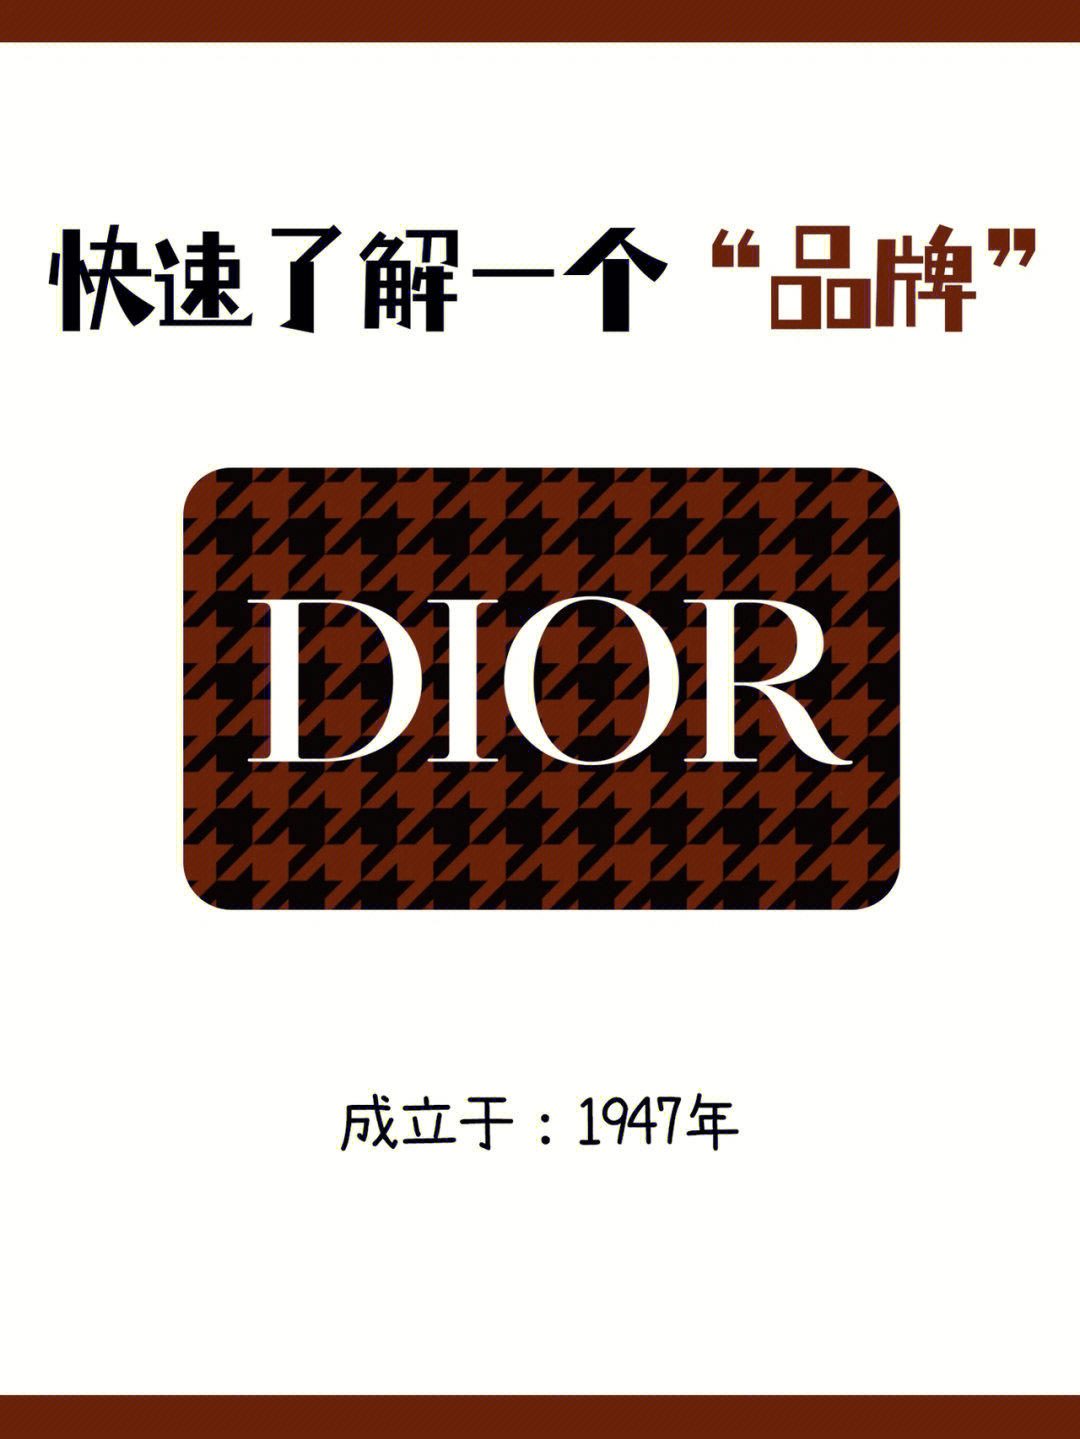 迪奥logo标志含义图片